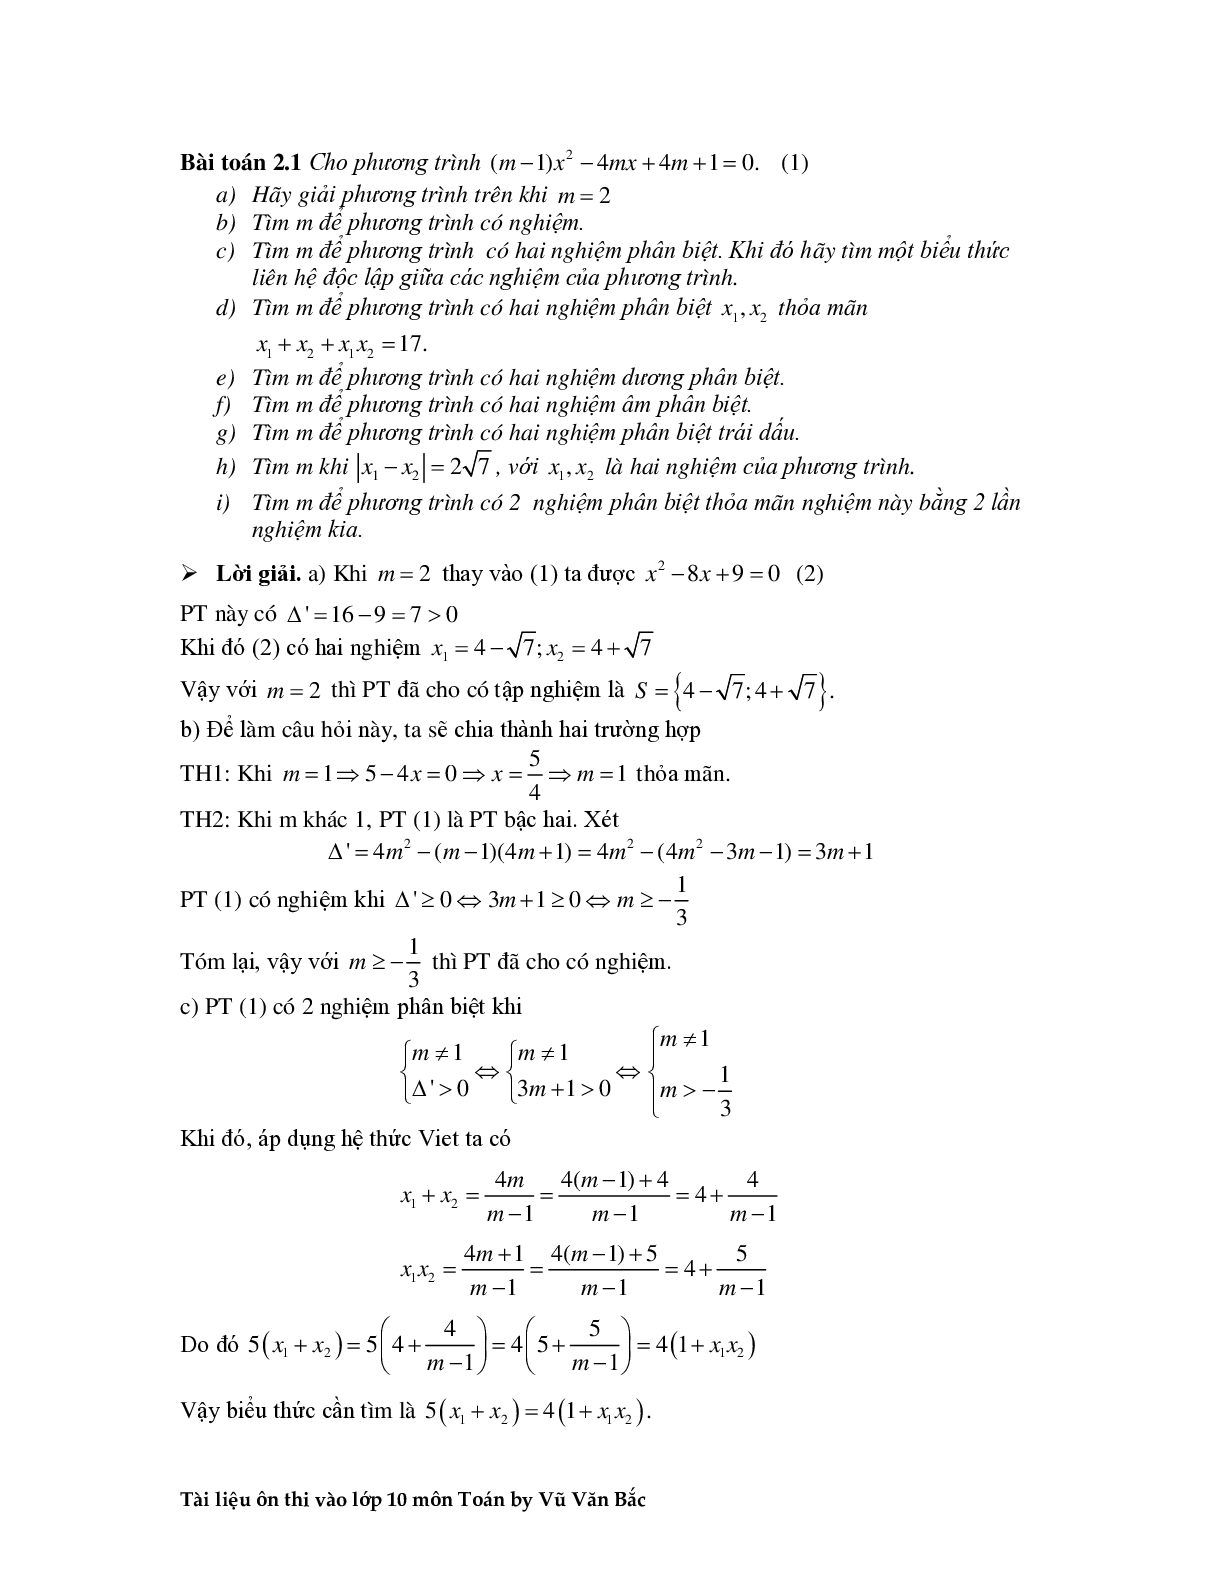 Tài liệu ôn thi vào lớp 10 môn toán (trang 9)